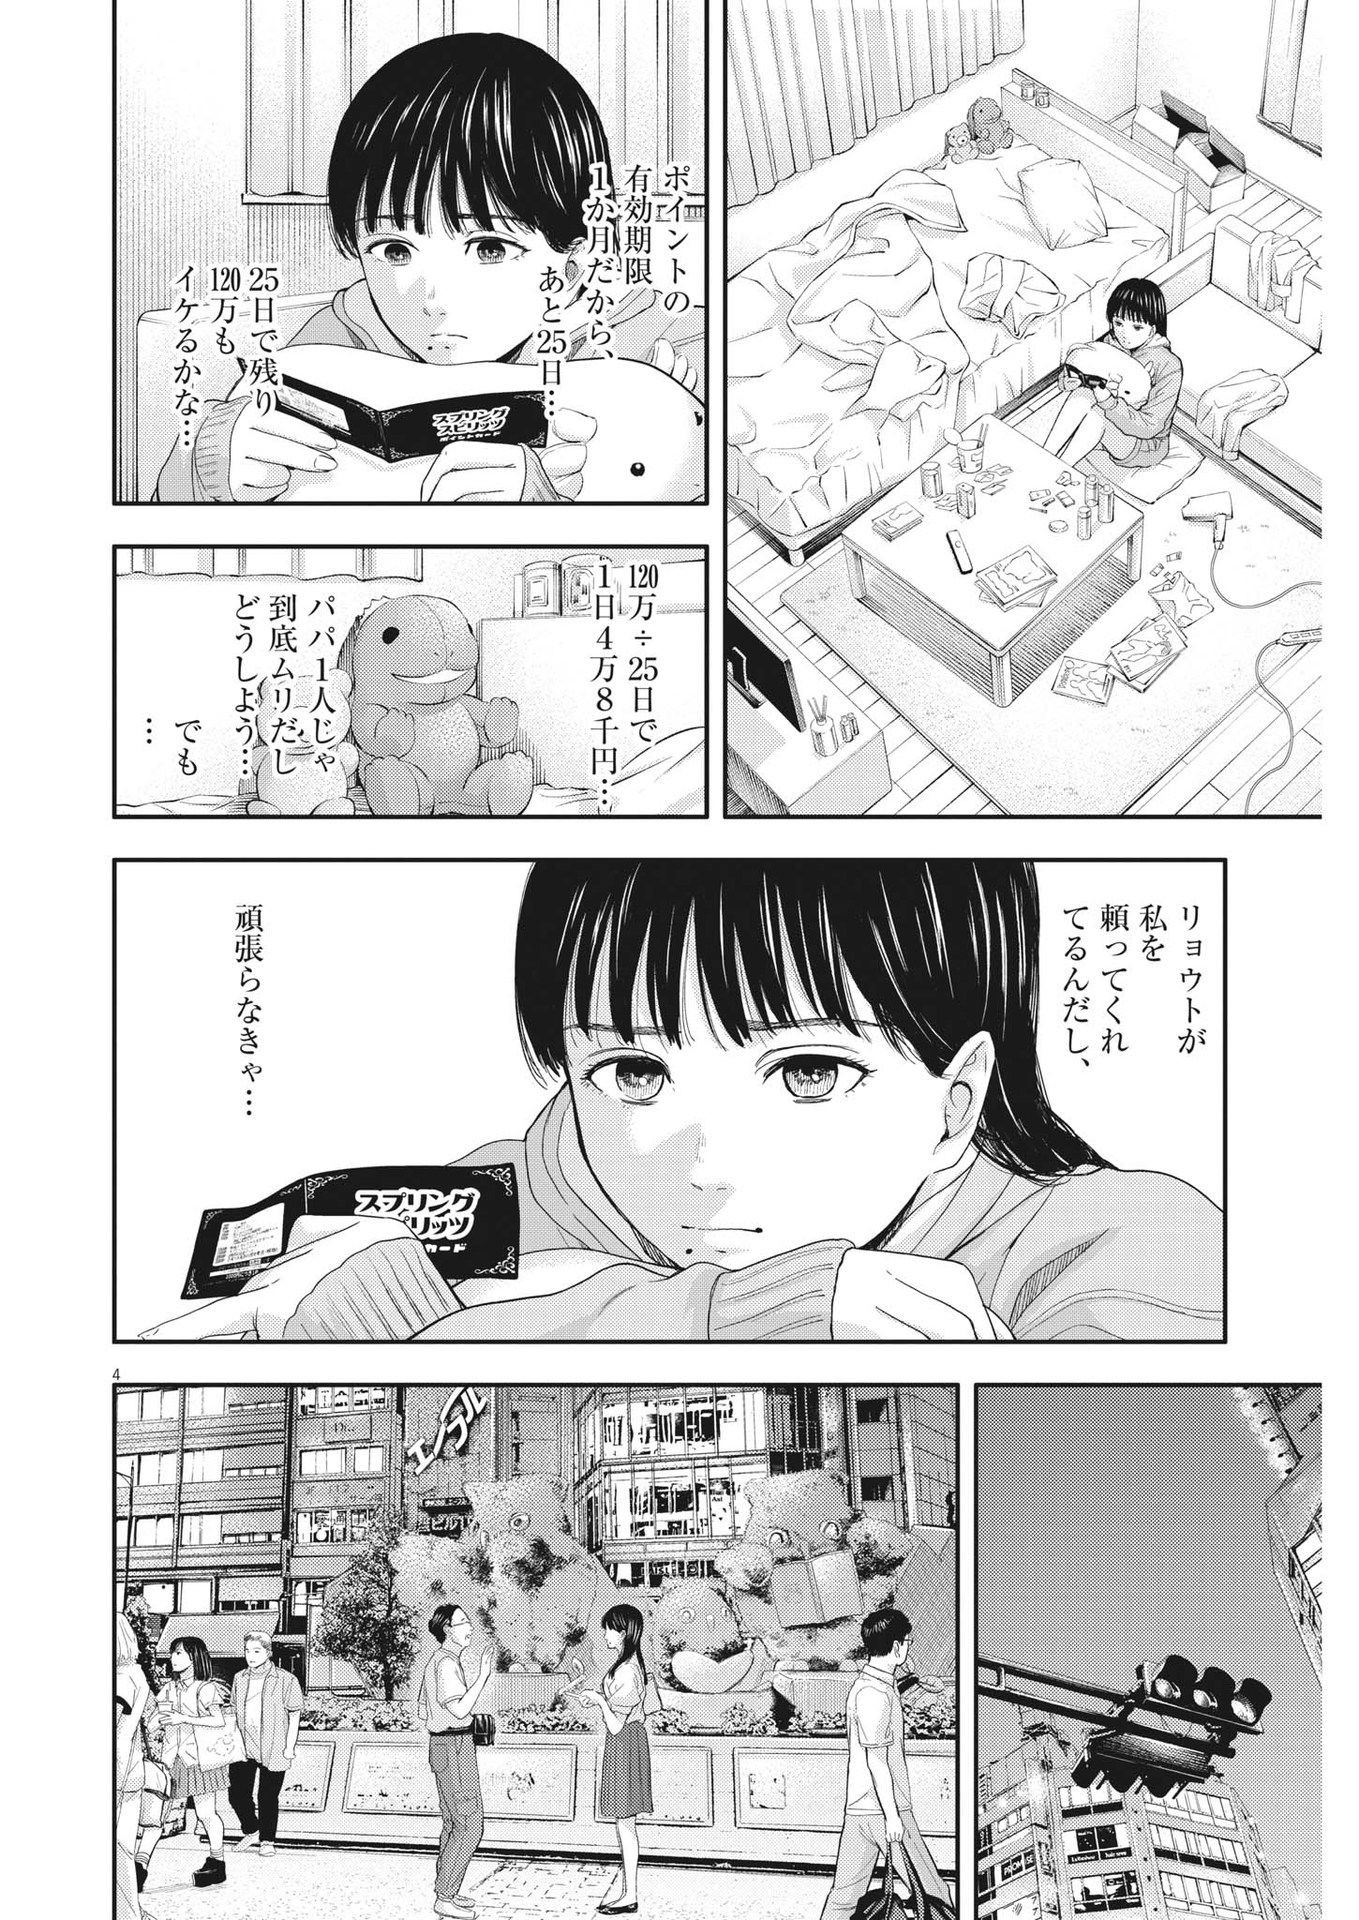 Yumenashi-sensei no Shinroshidou - Chapter 14 - Page 4